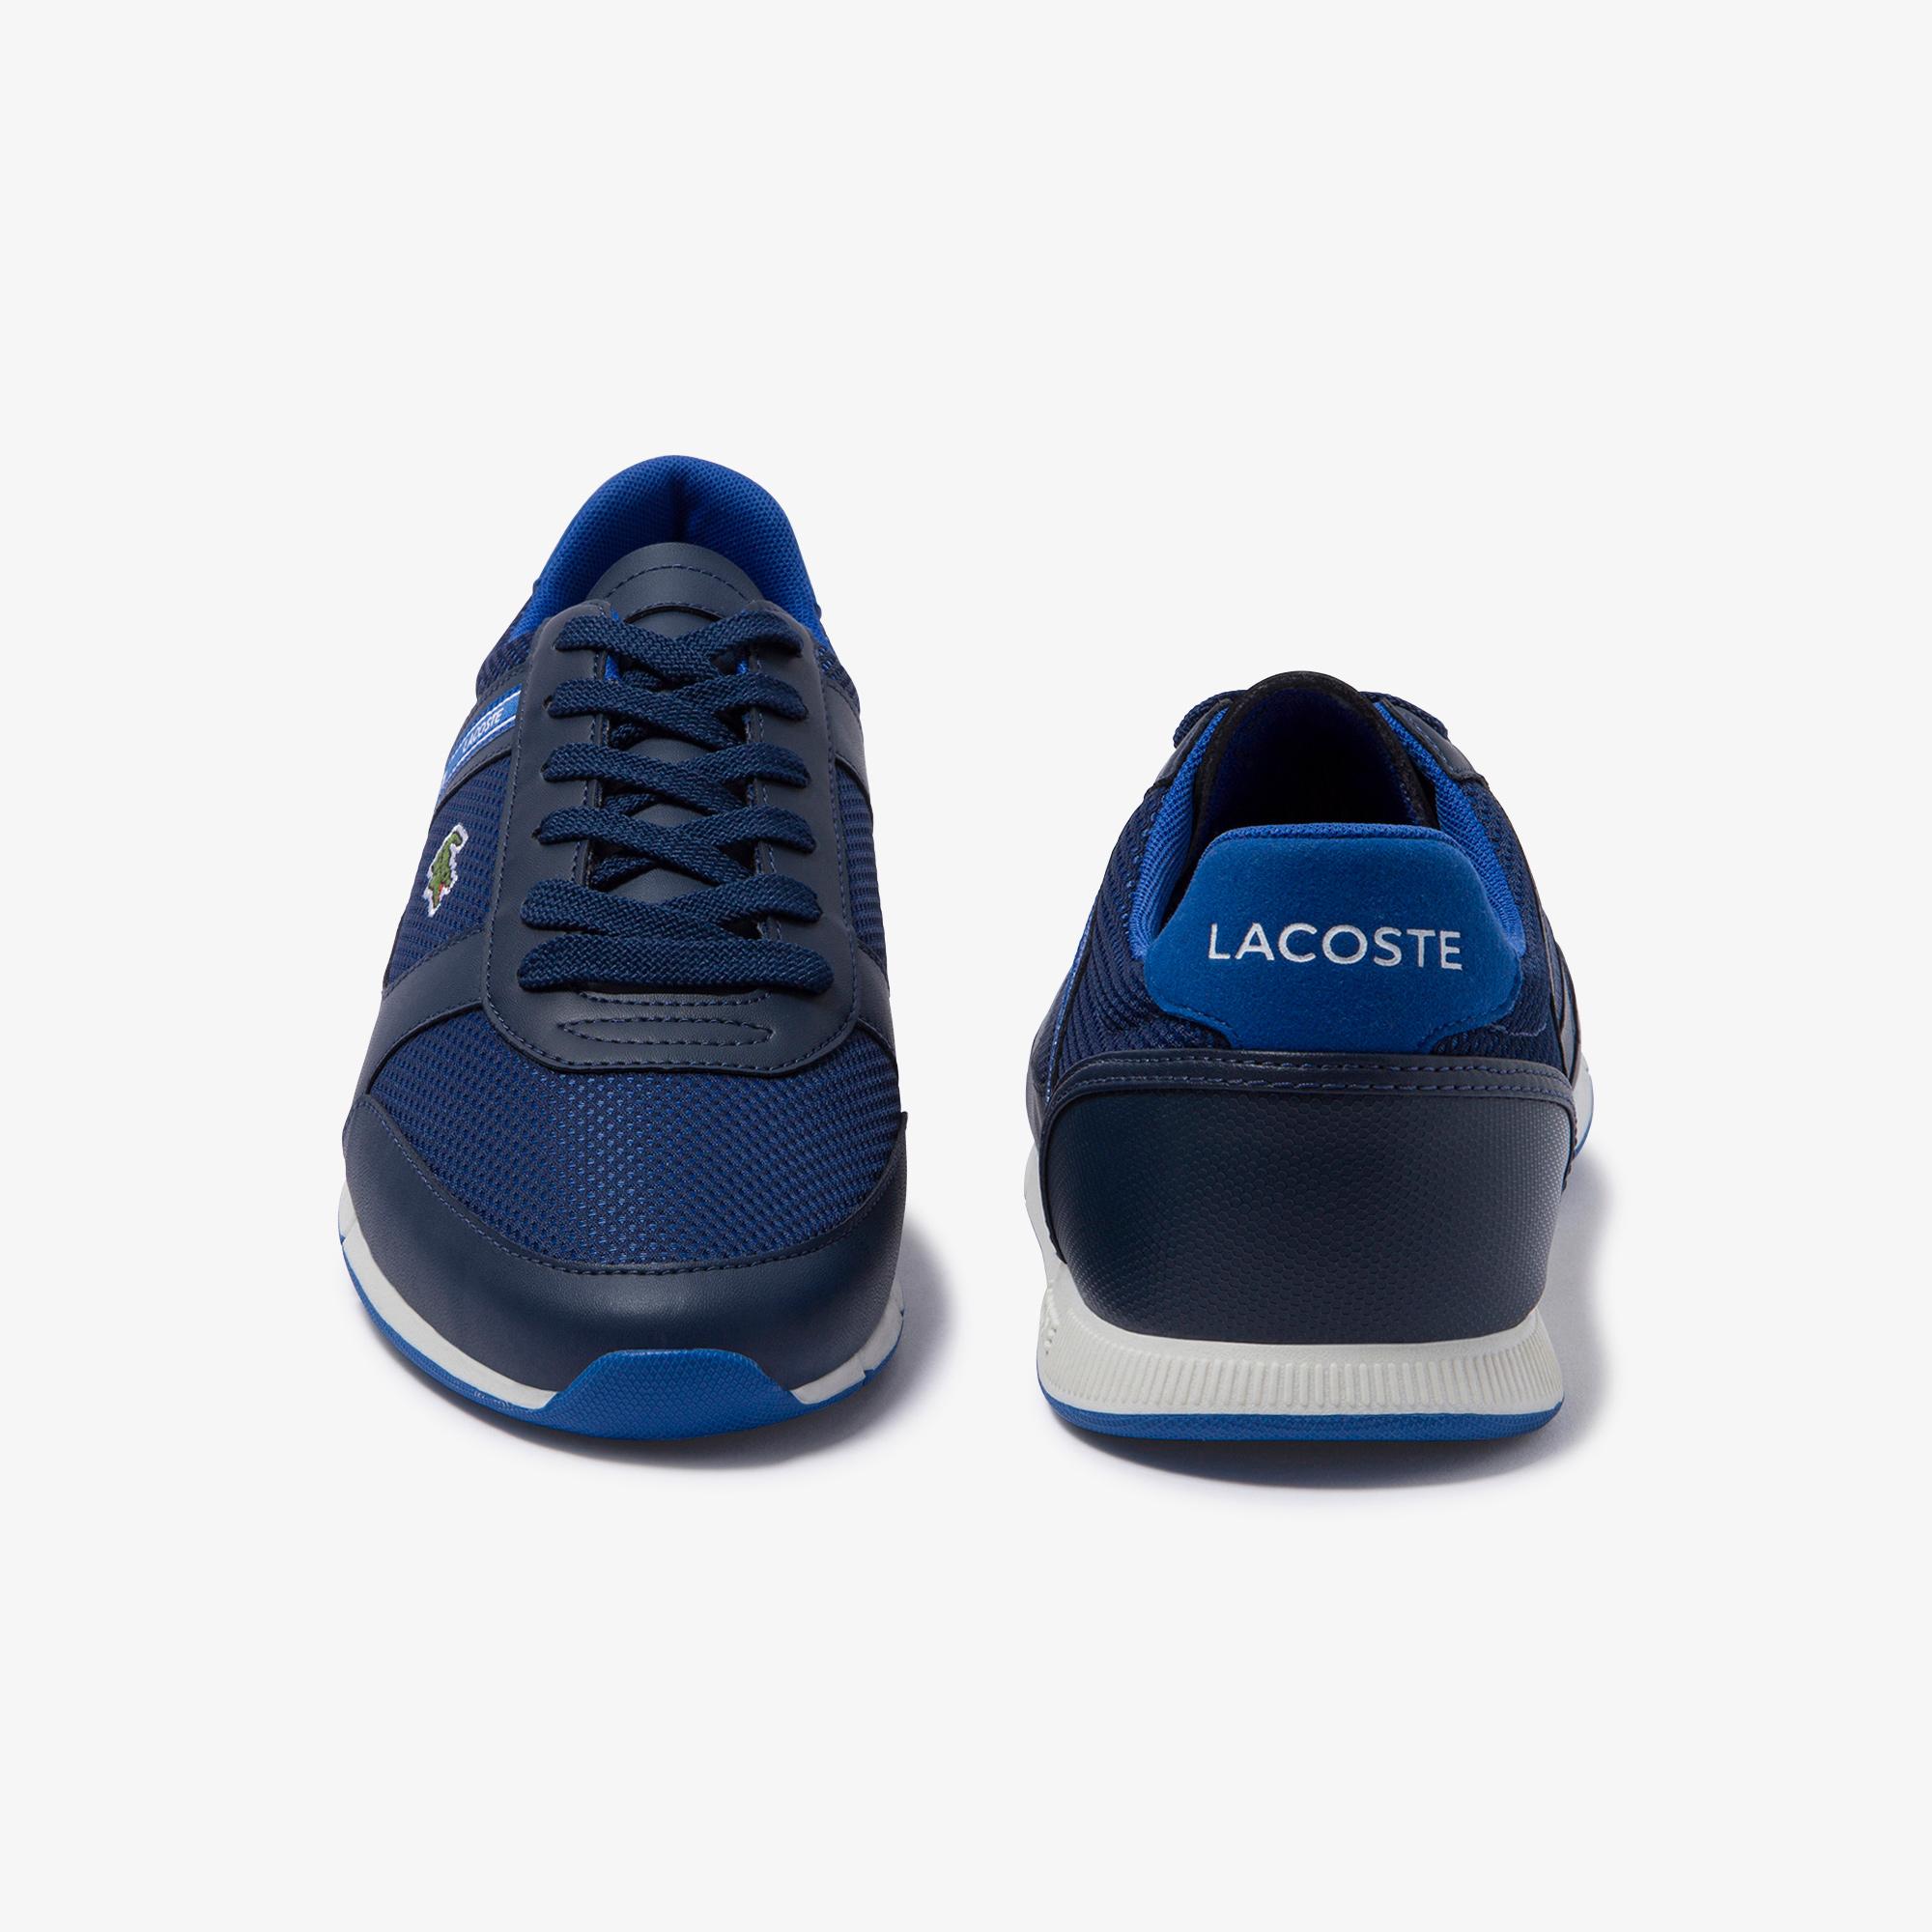 Lacoste Lacoste Menerva Sport 120 1 Cma Erkek Lacivert - Mavi Ayakkabı. 5